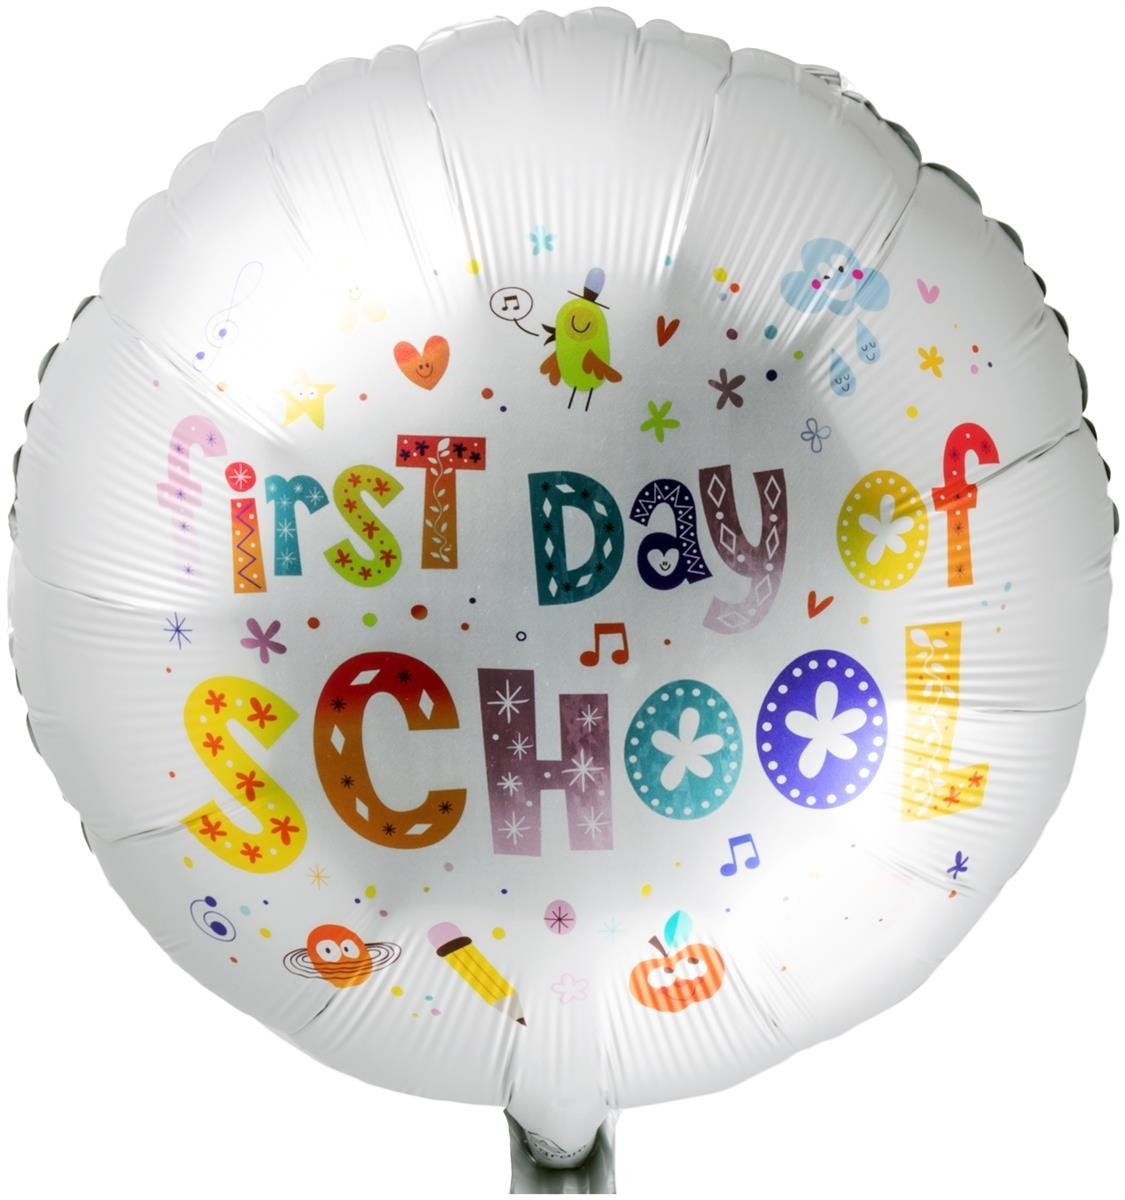 Folienballon zur Einschulung "First day of school", Bunt